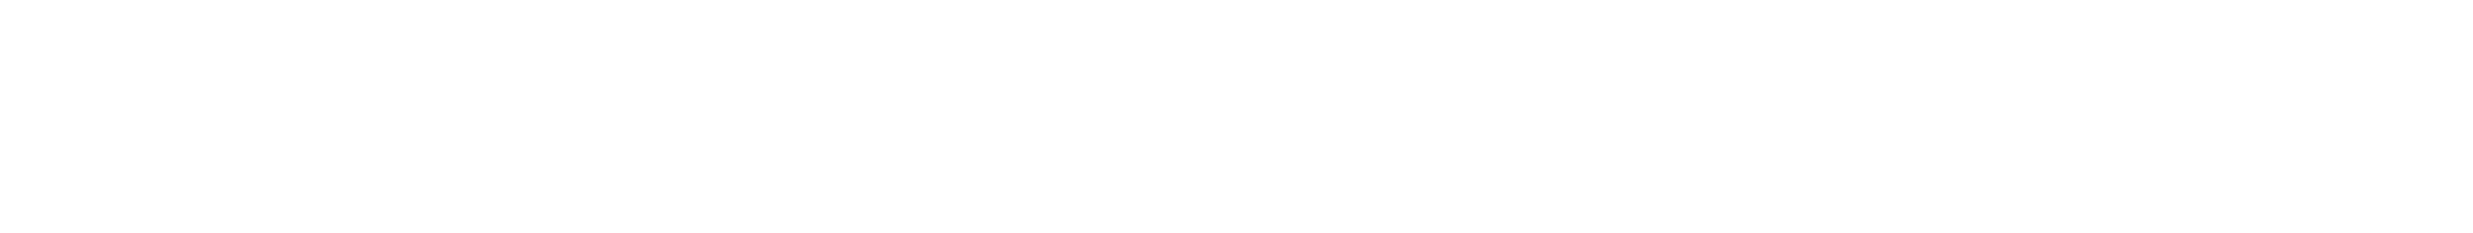 Tori Kellett logo final REV